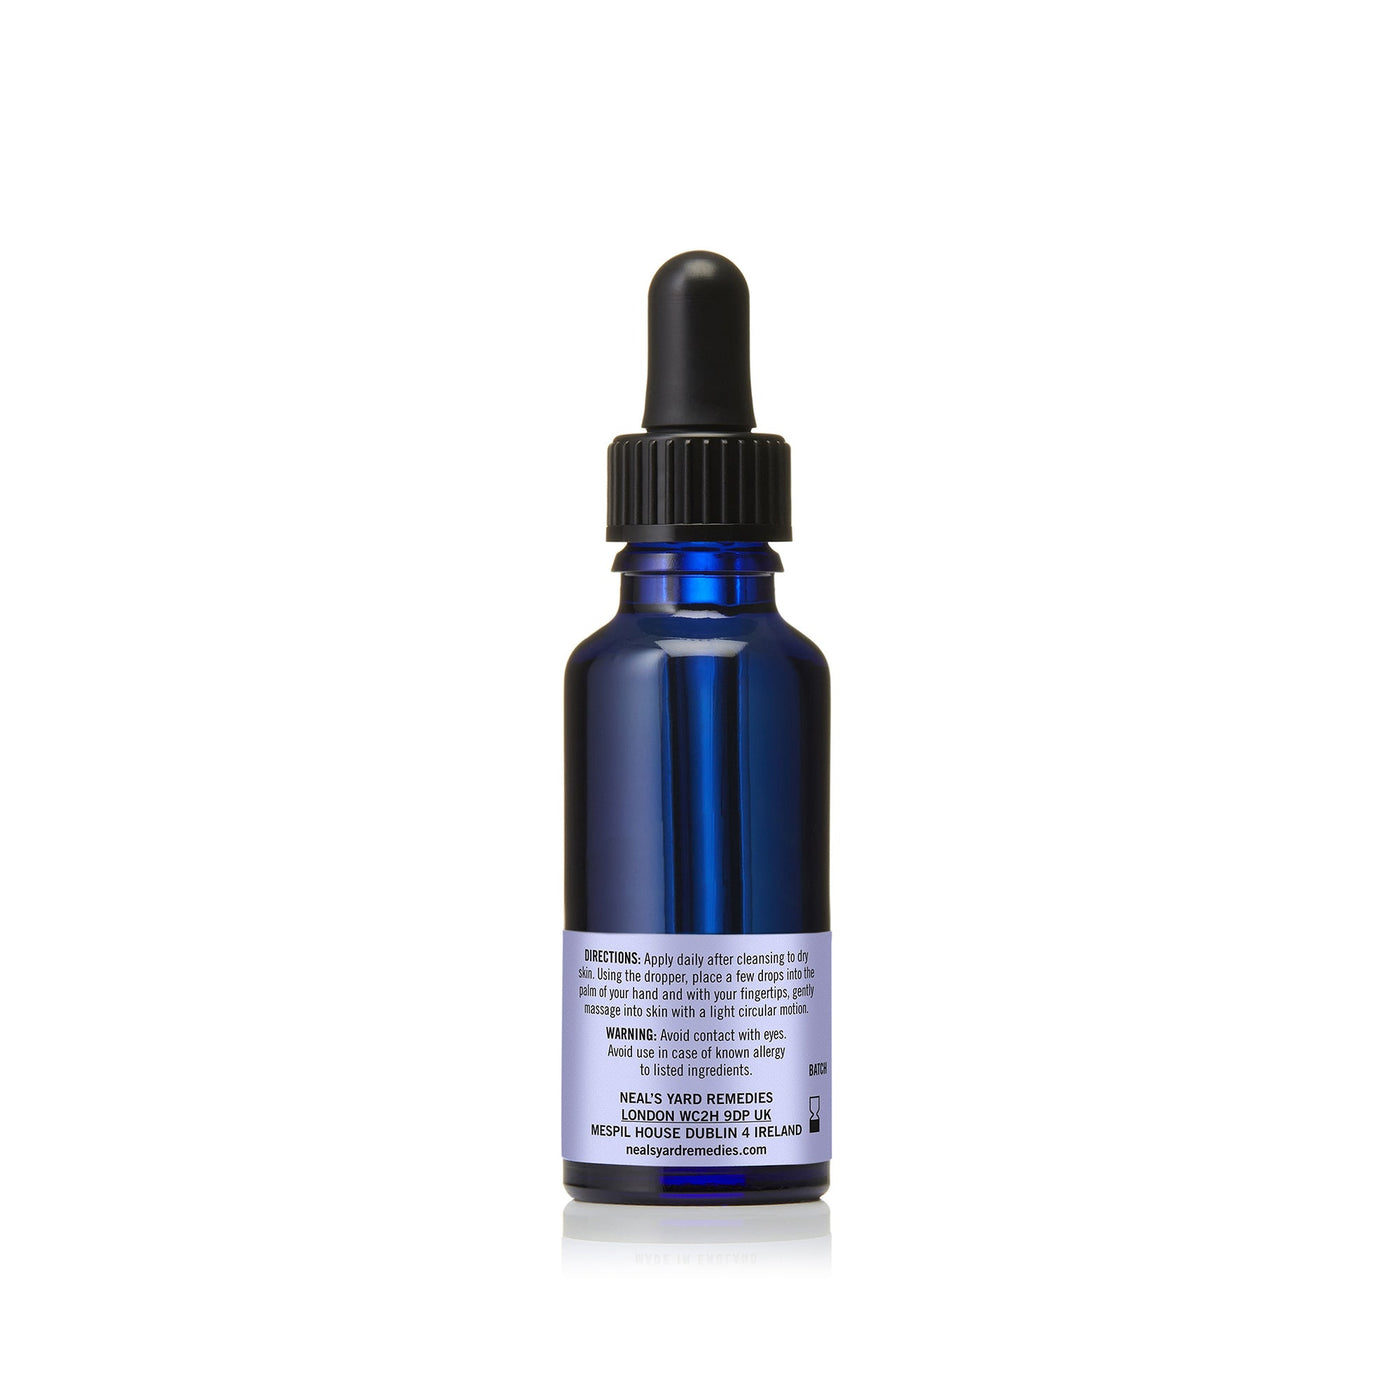 rejuvenating-frankincense-facial-oil-back-0785-high-res-2000px.jpg